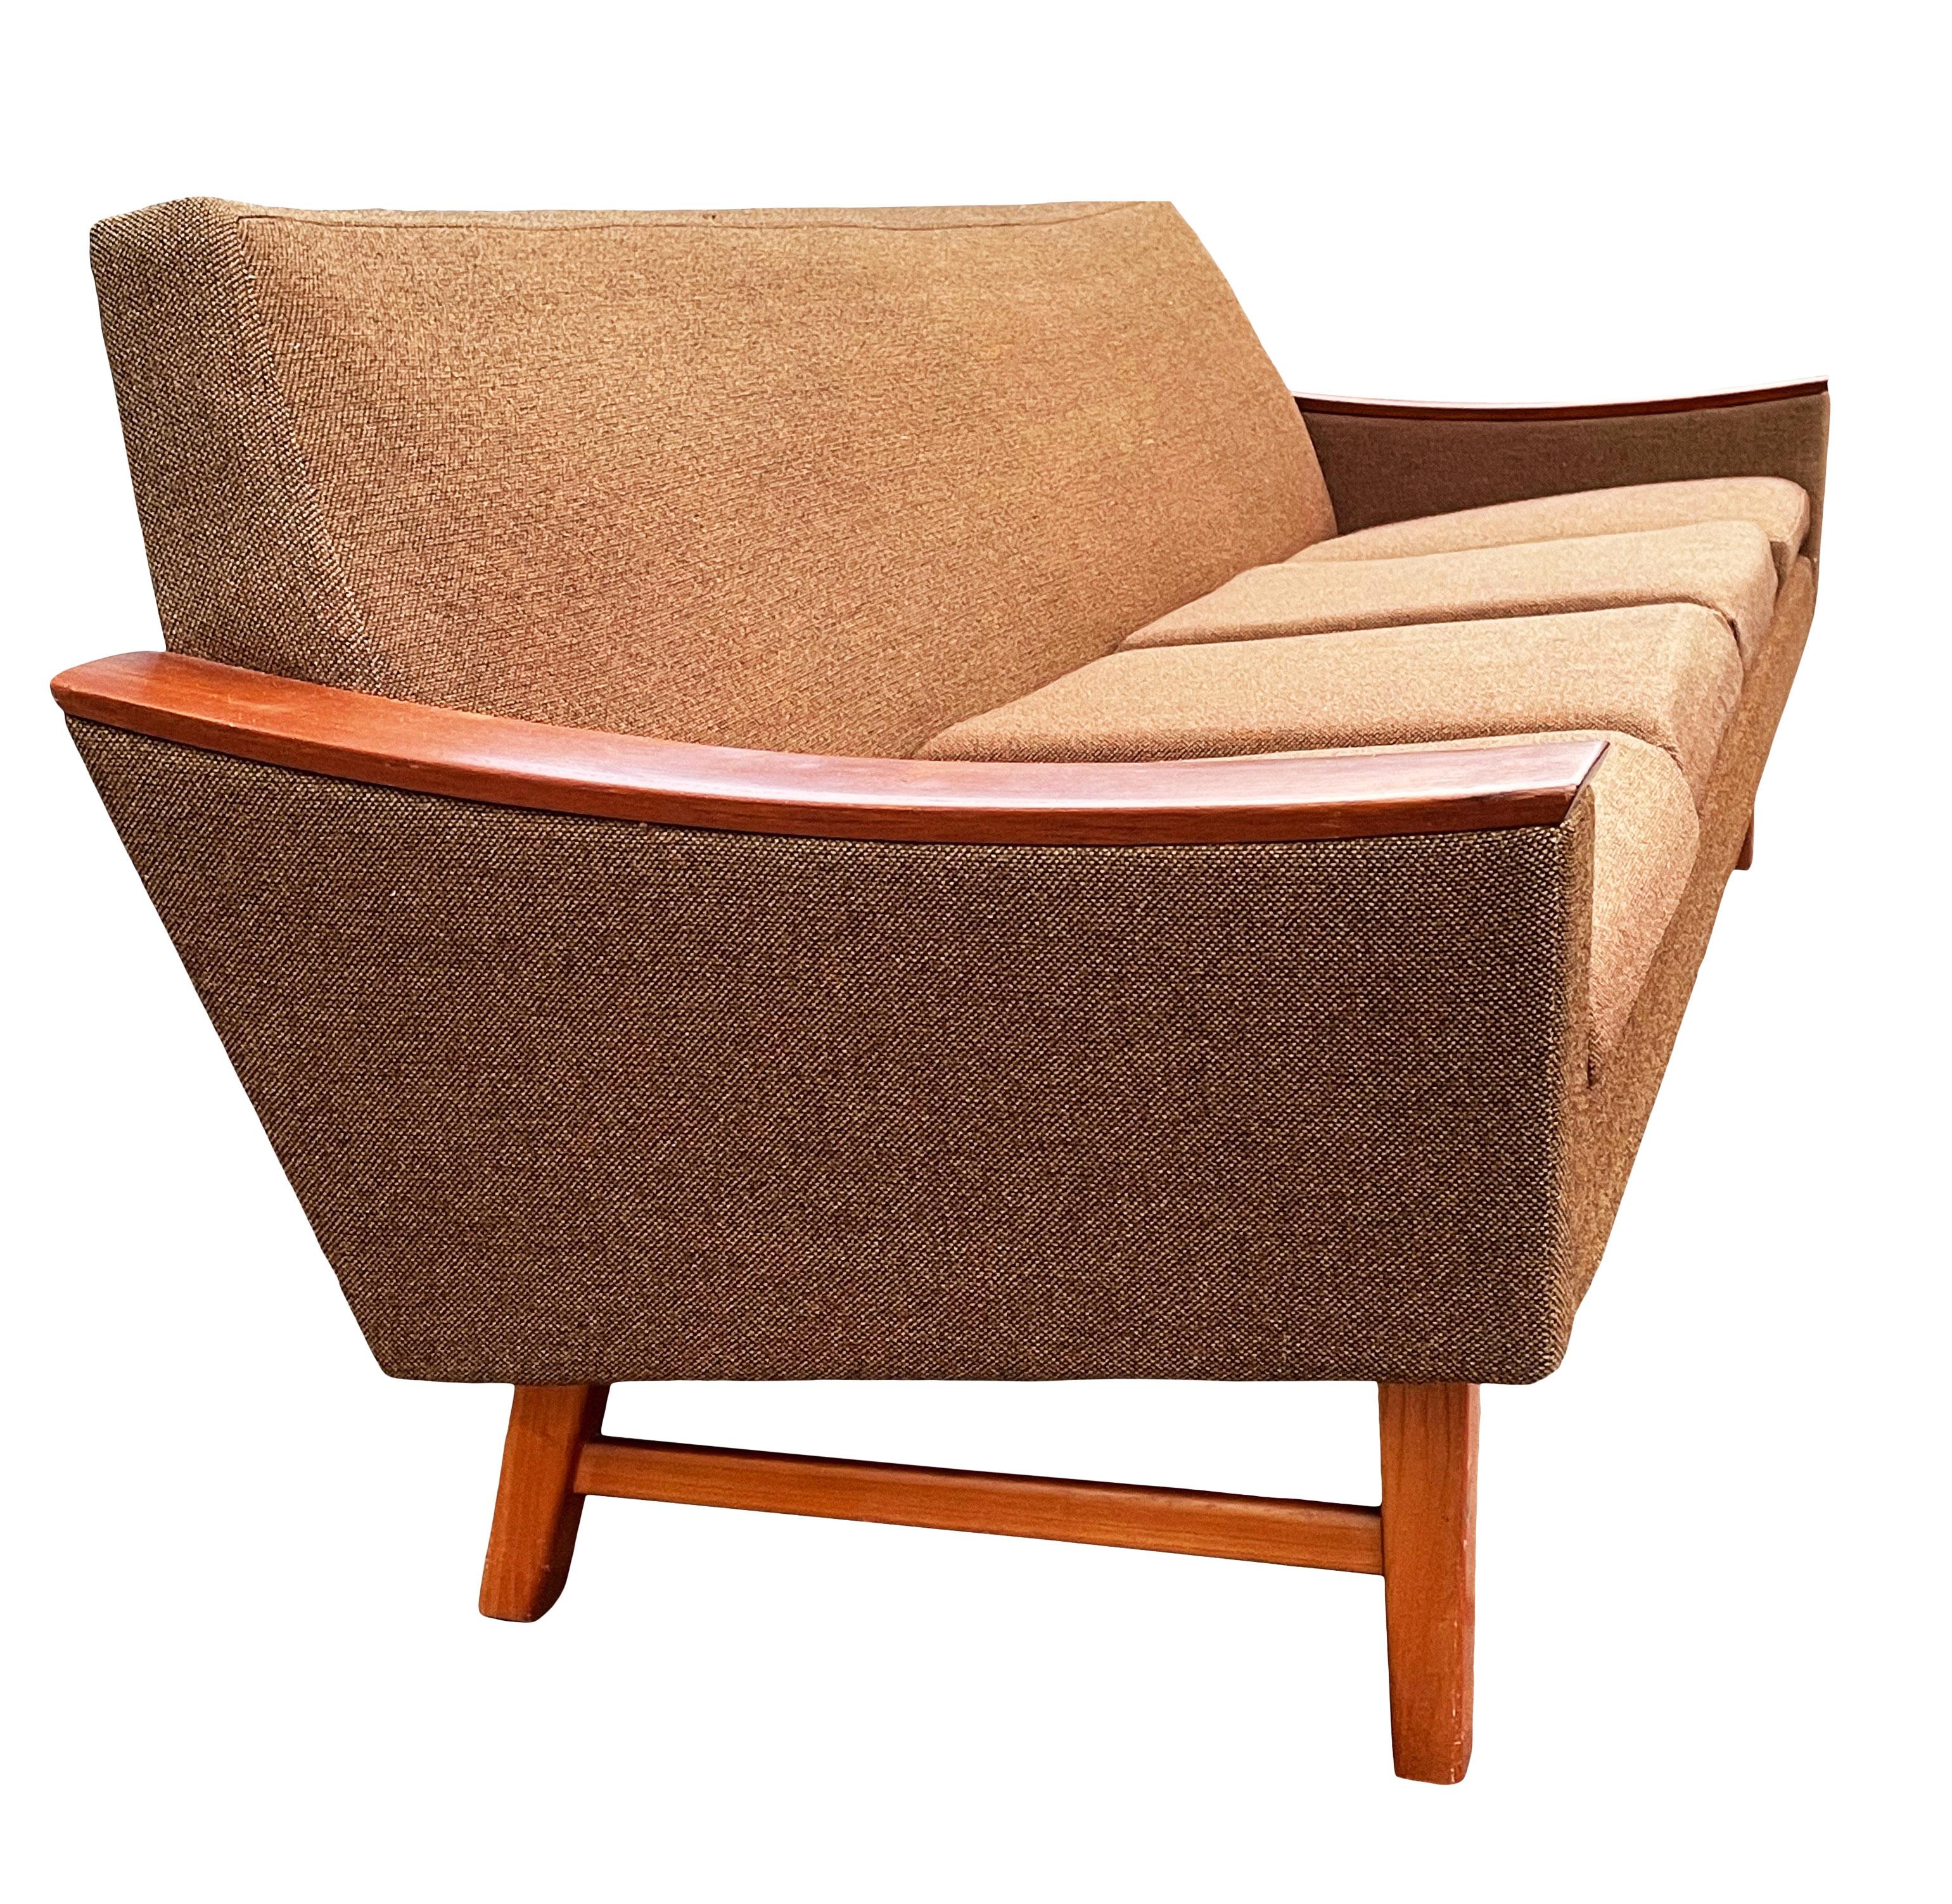 Midcentury Danish Modern Sofa in Teak by Oscar Langlo for Pi Langlos Fabrikker 1